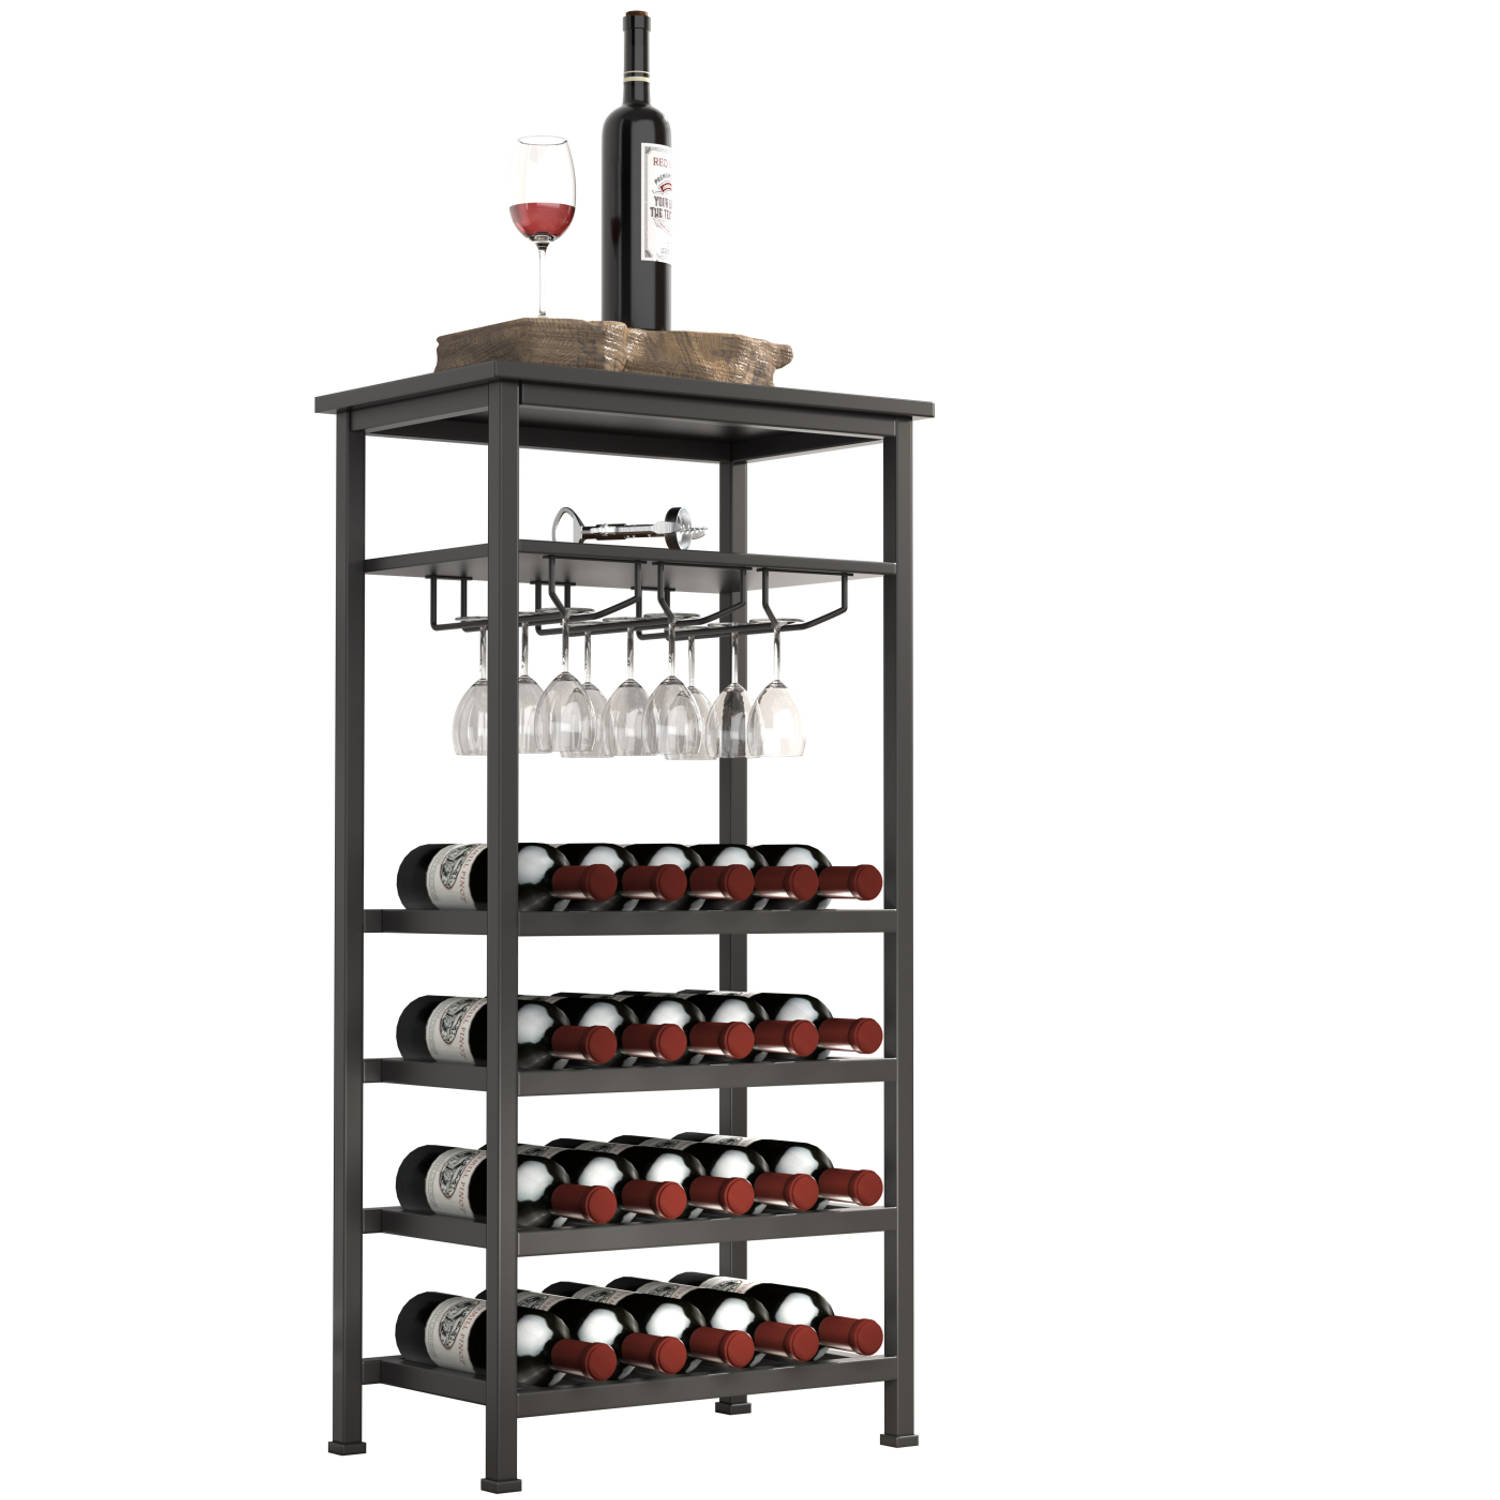 Wijnrek industrieel design wijnkast zwart - rek voor opbergen 20 flessen met glashouder - 50 x 32 x 100 cm